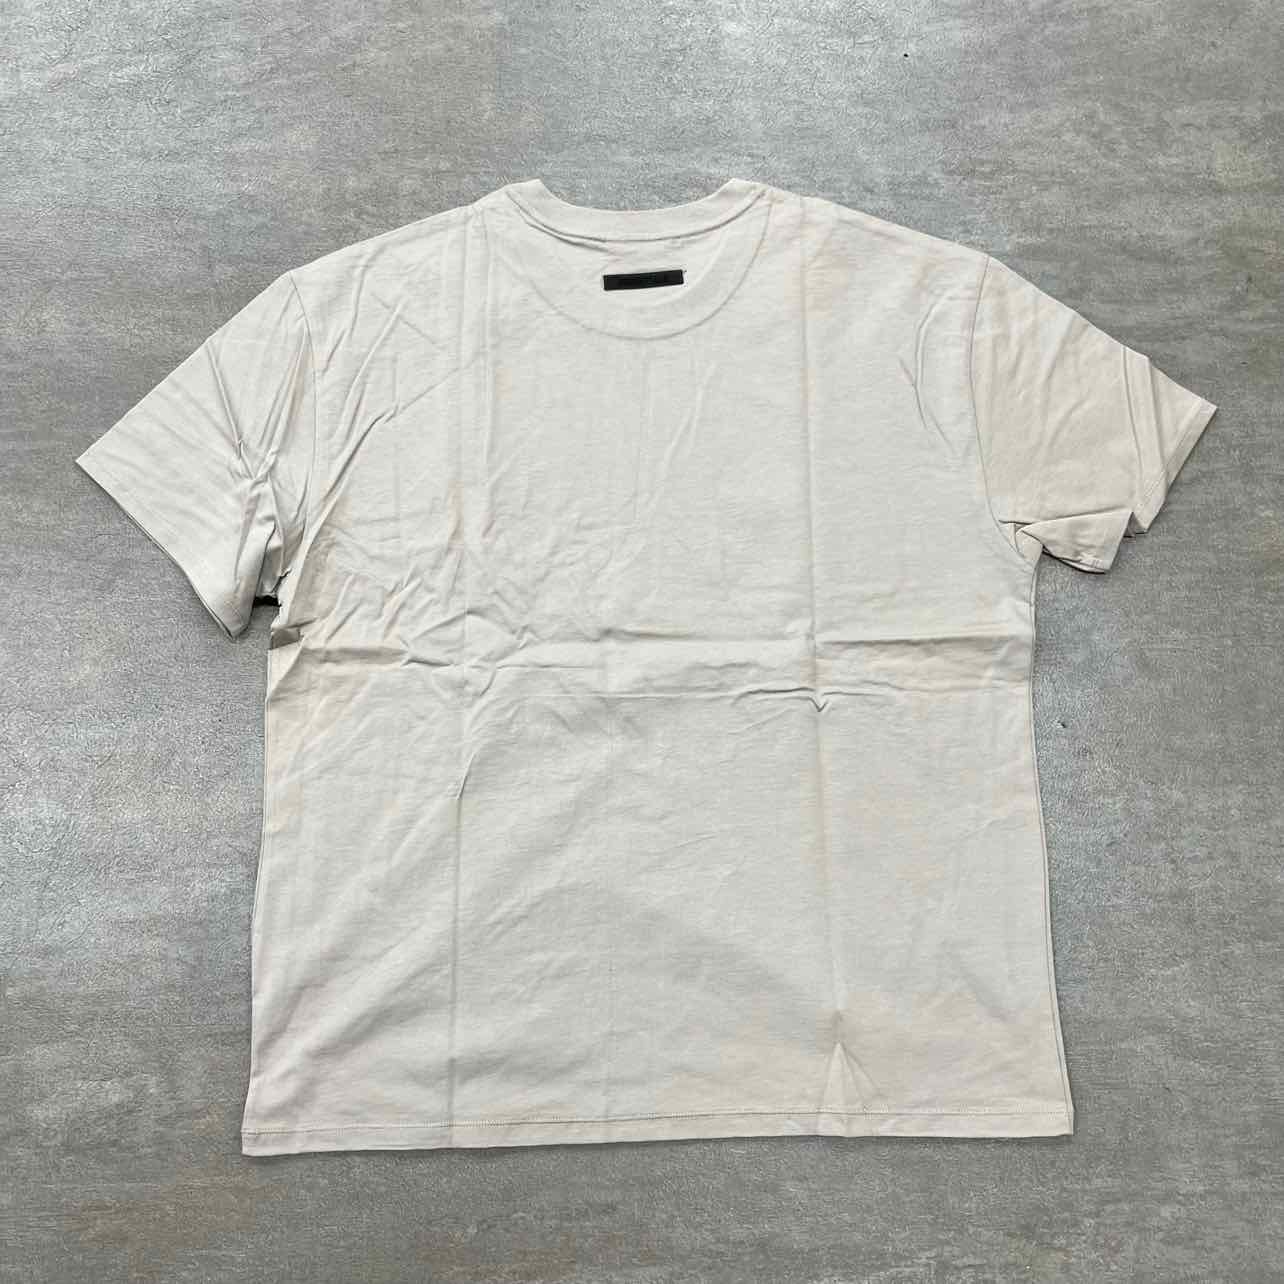 Fear of God T-Shirt &quot;ESSENTIALS&quot; Tan New Size L